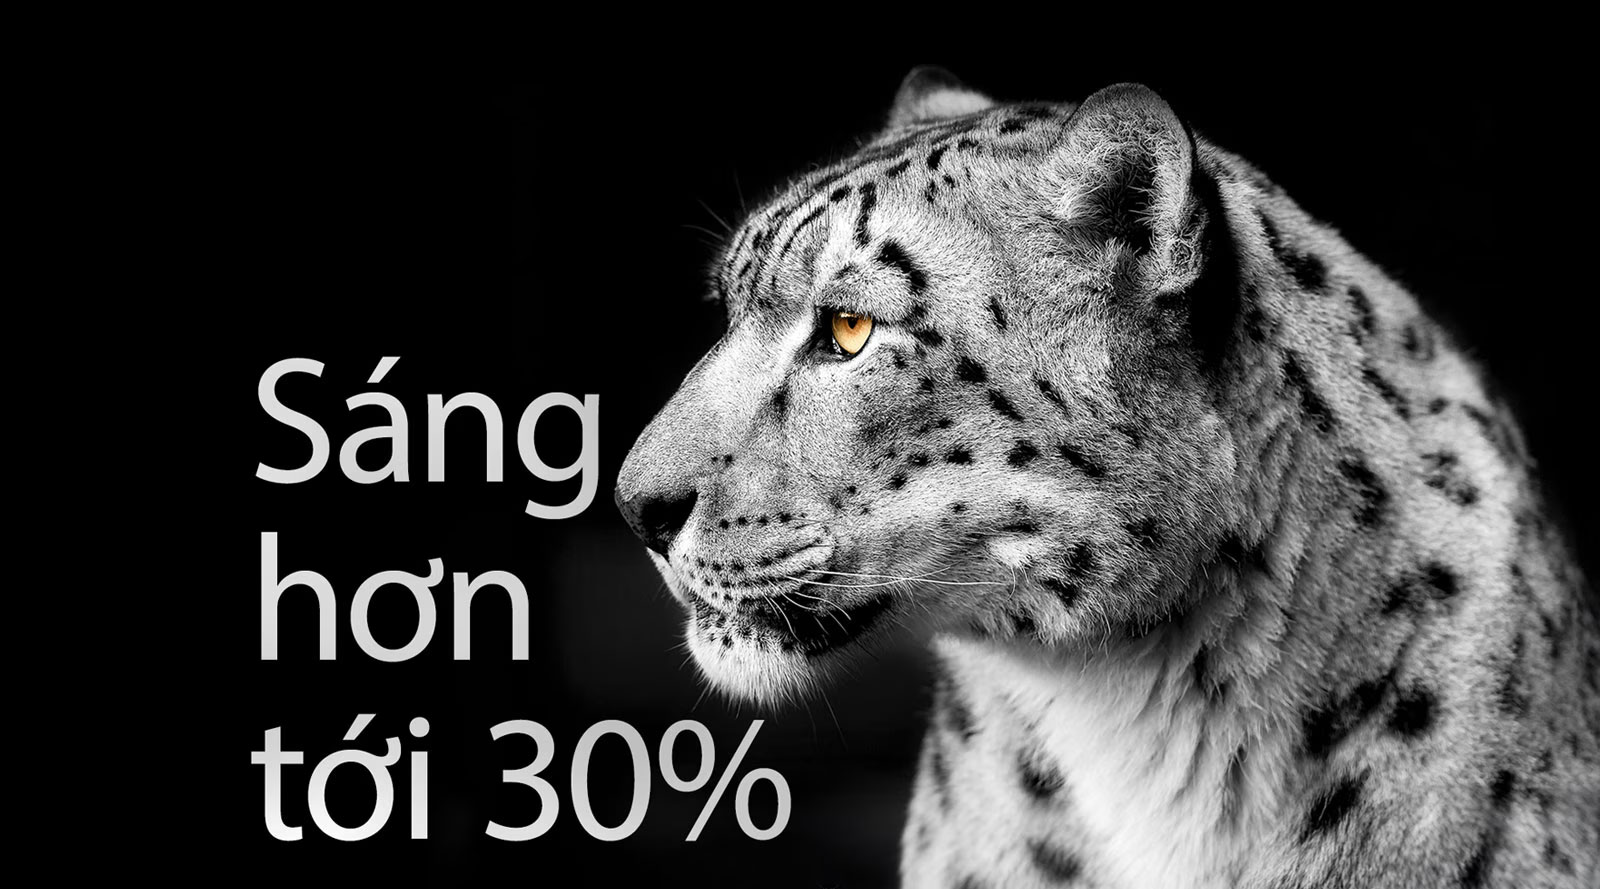 Một con báo trắng đang trưng ra khuôn mặt nghiêng của nó ở phía bên trái hình ảnh. Cụm từ “Sáng hơn tới 30%” xuất hiện ở bên trái.